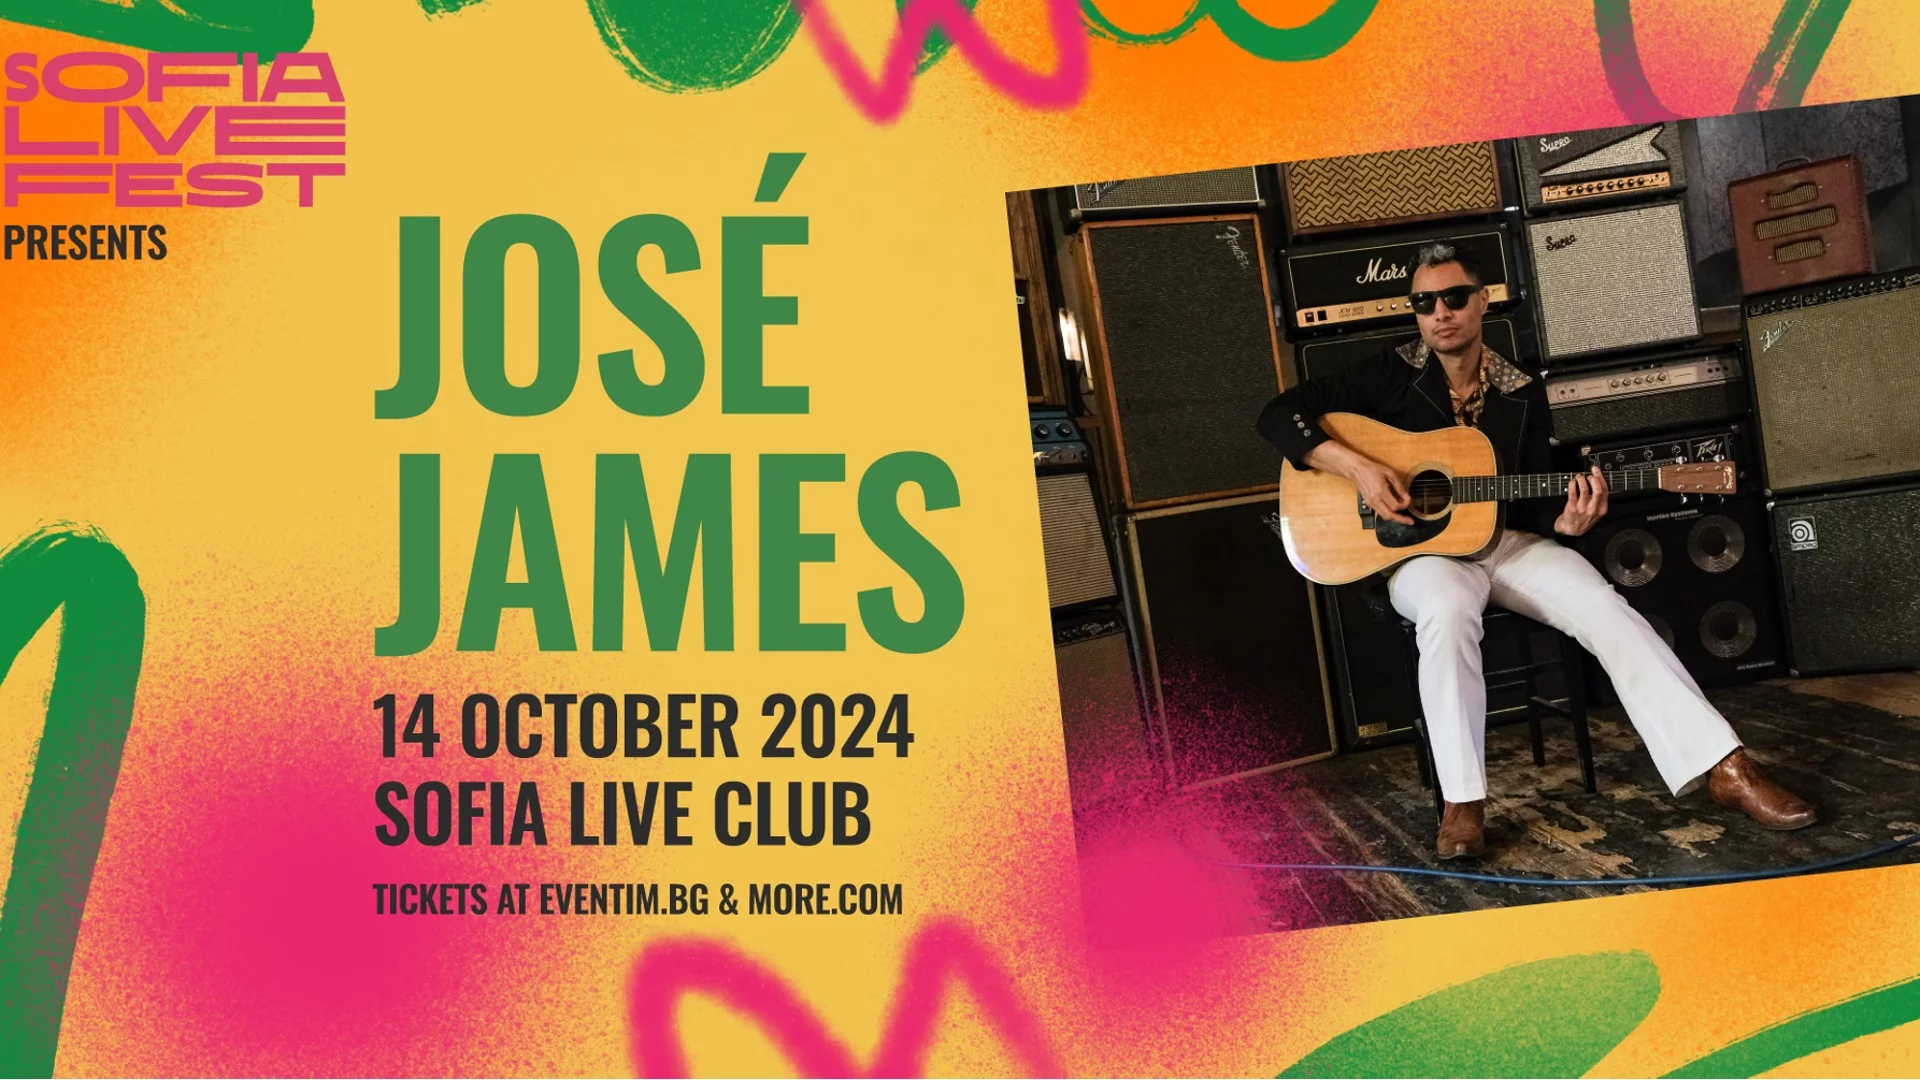 Феноменалният José James представя албума си "1978" в Sofia Live Club през октомври